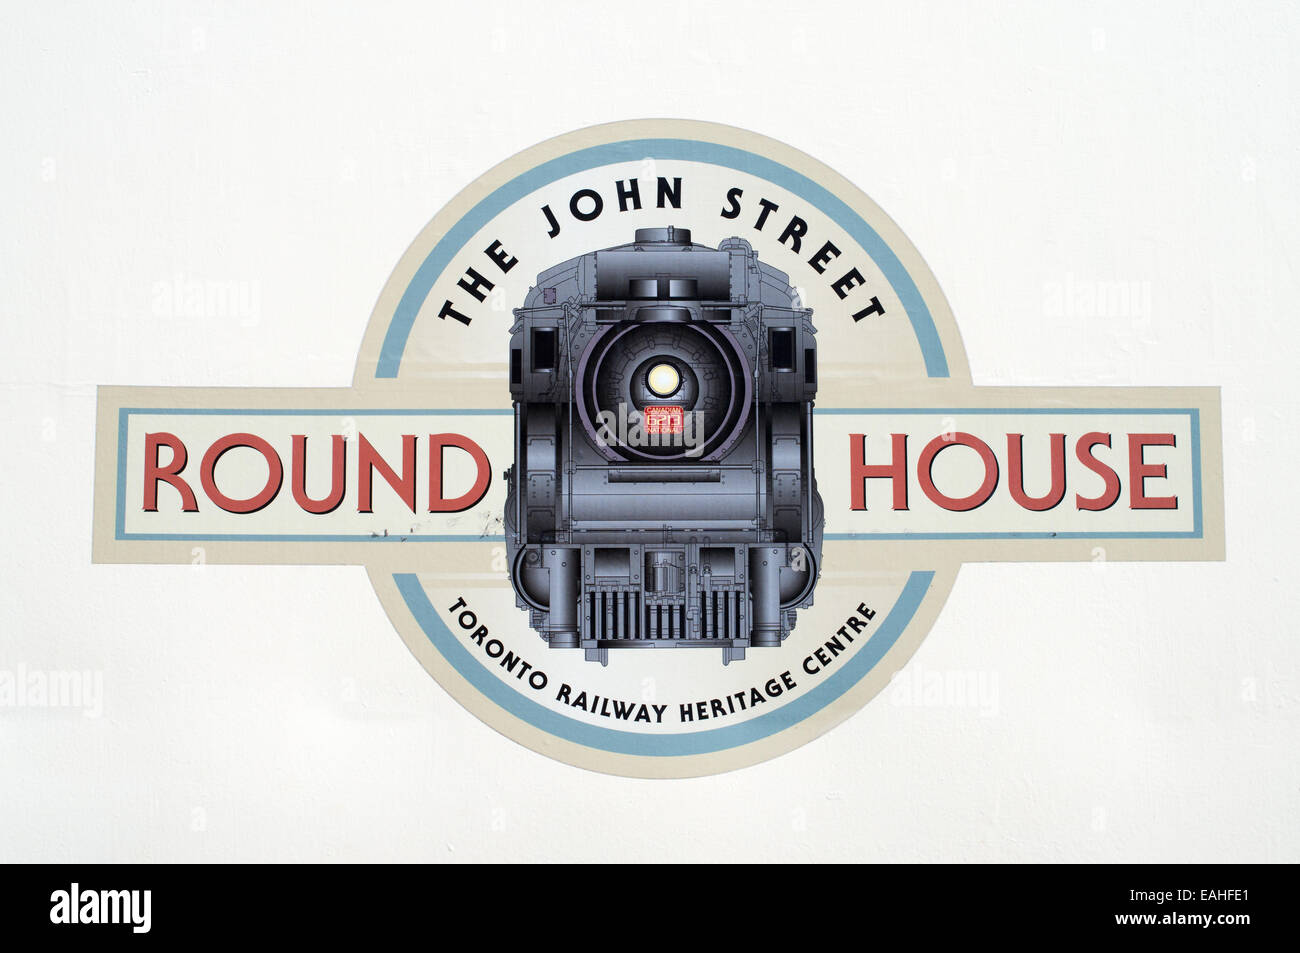 La rotonde de John Street Toronto Railway Heritage logo Centre Toronto, Ontario, Canada Banque D'Images